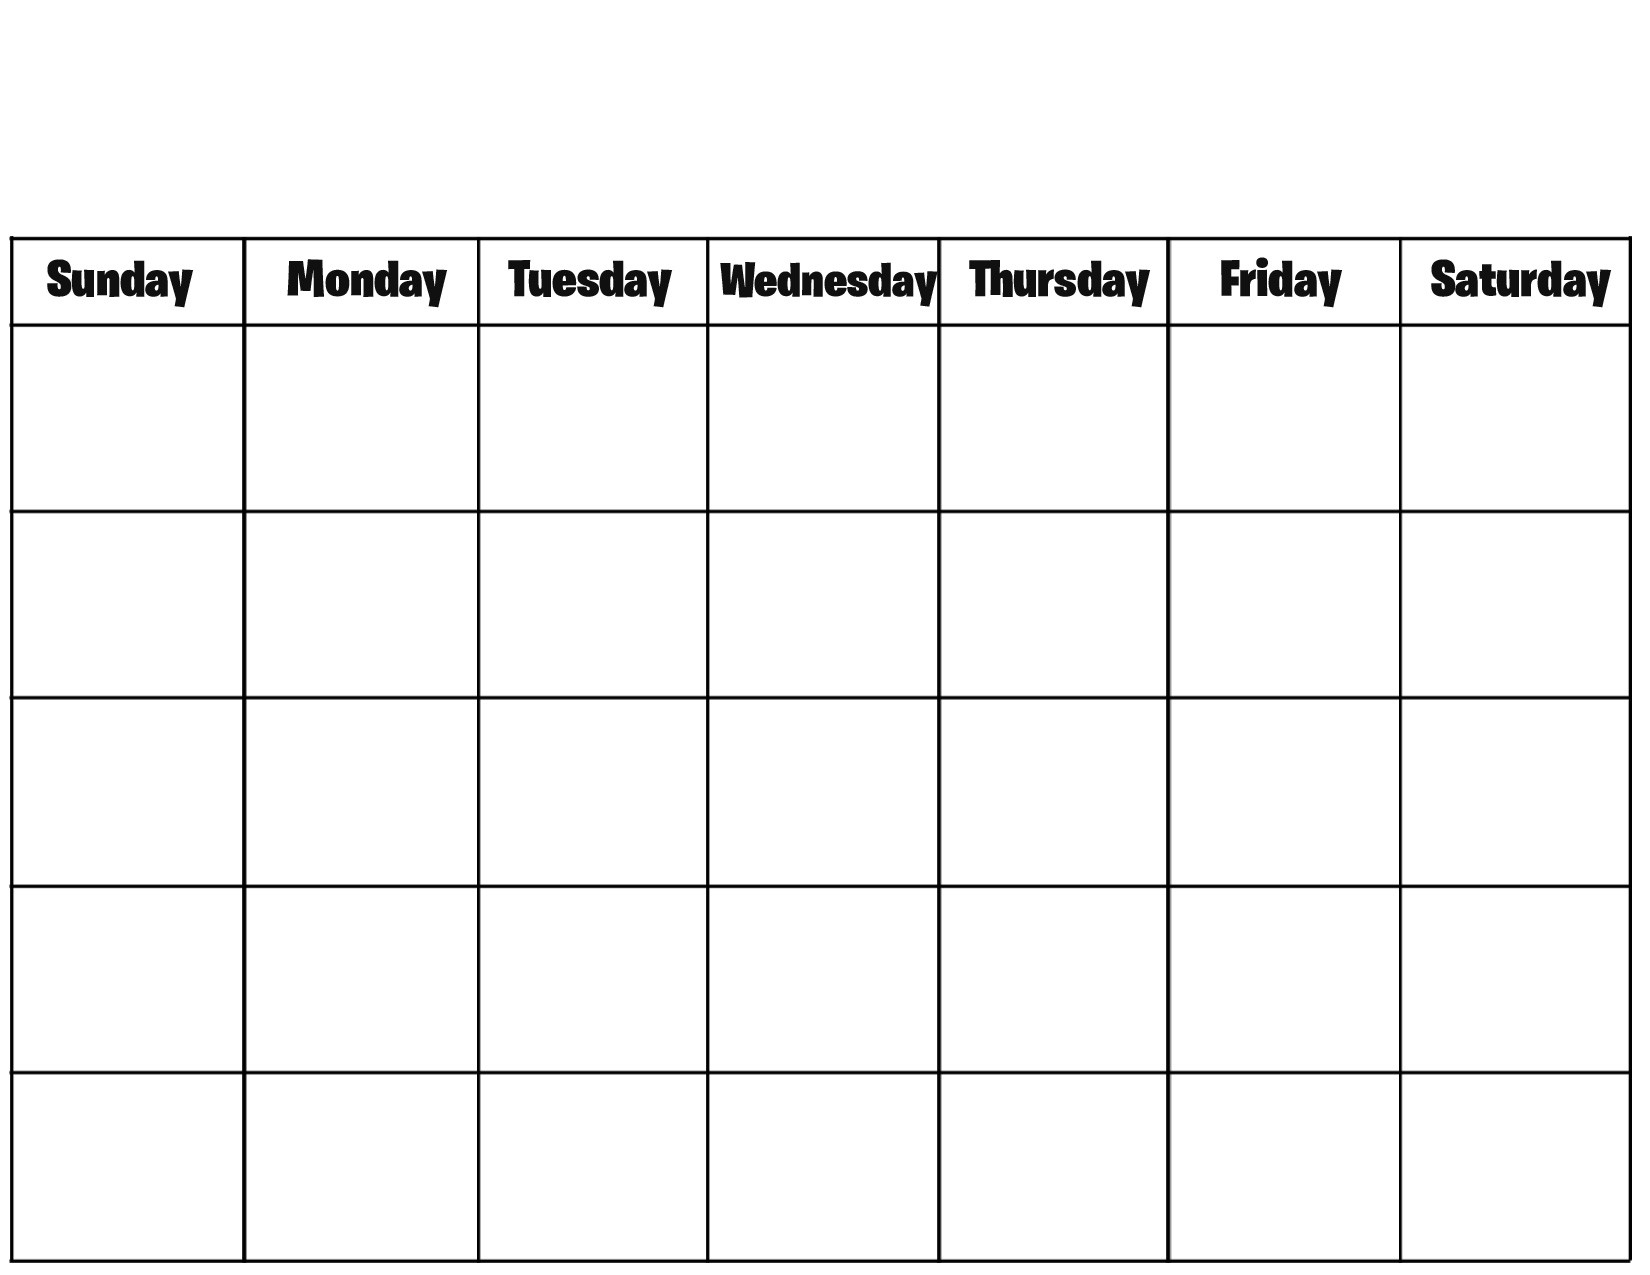 Free Printable Blank Calendar Pages Printable Calendar Templates within Free Blank Calendar Templates To Print